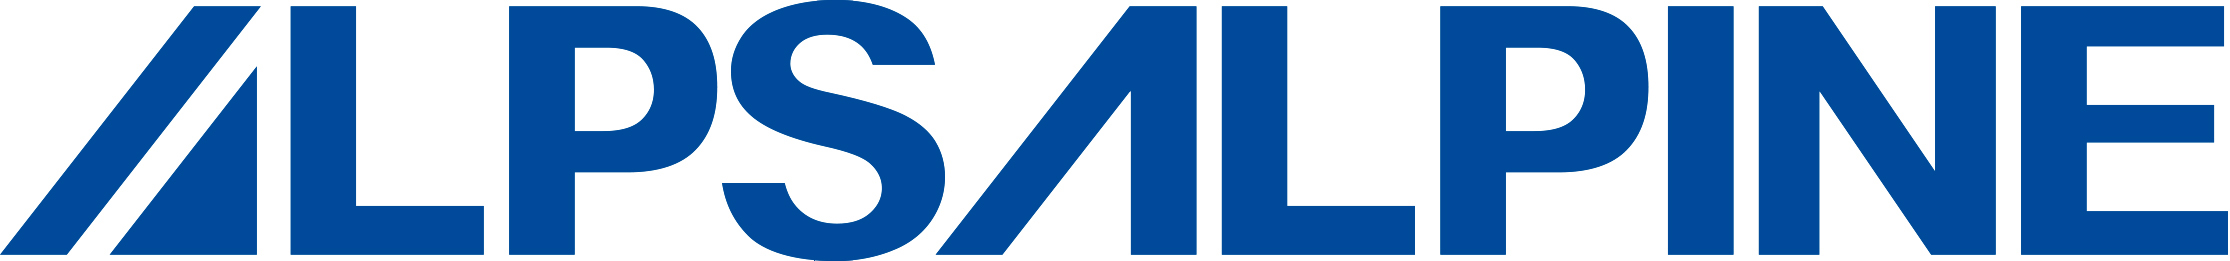 ALPS ALPINE EUROPE GmbH - Sweden Filial